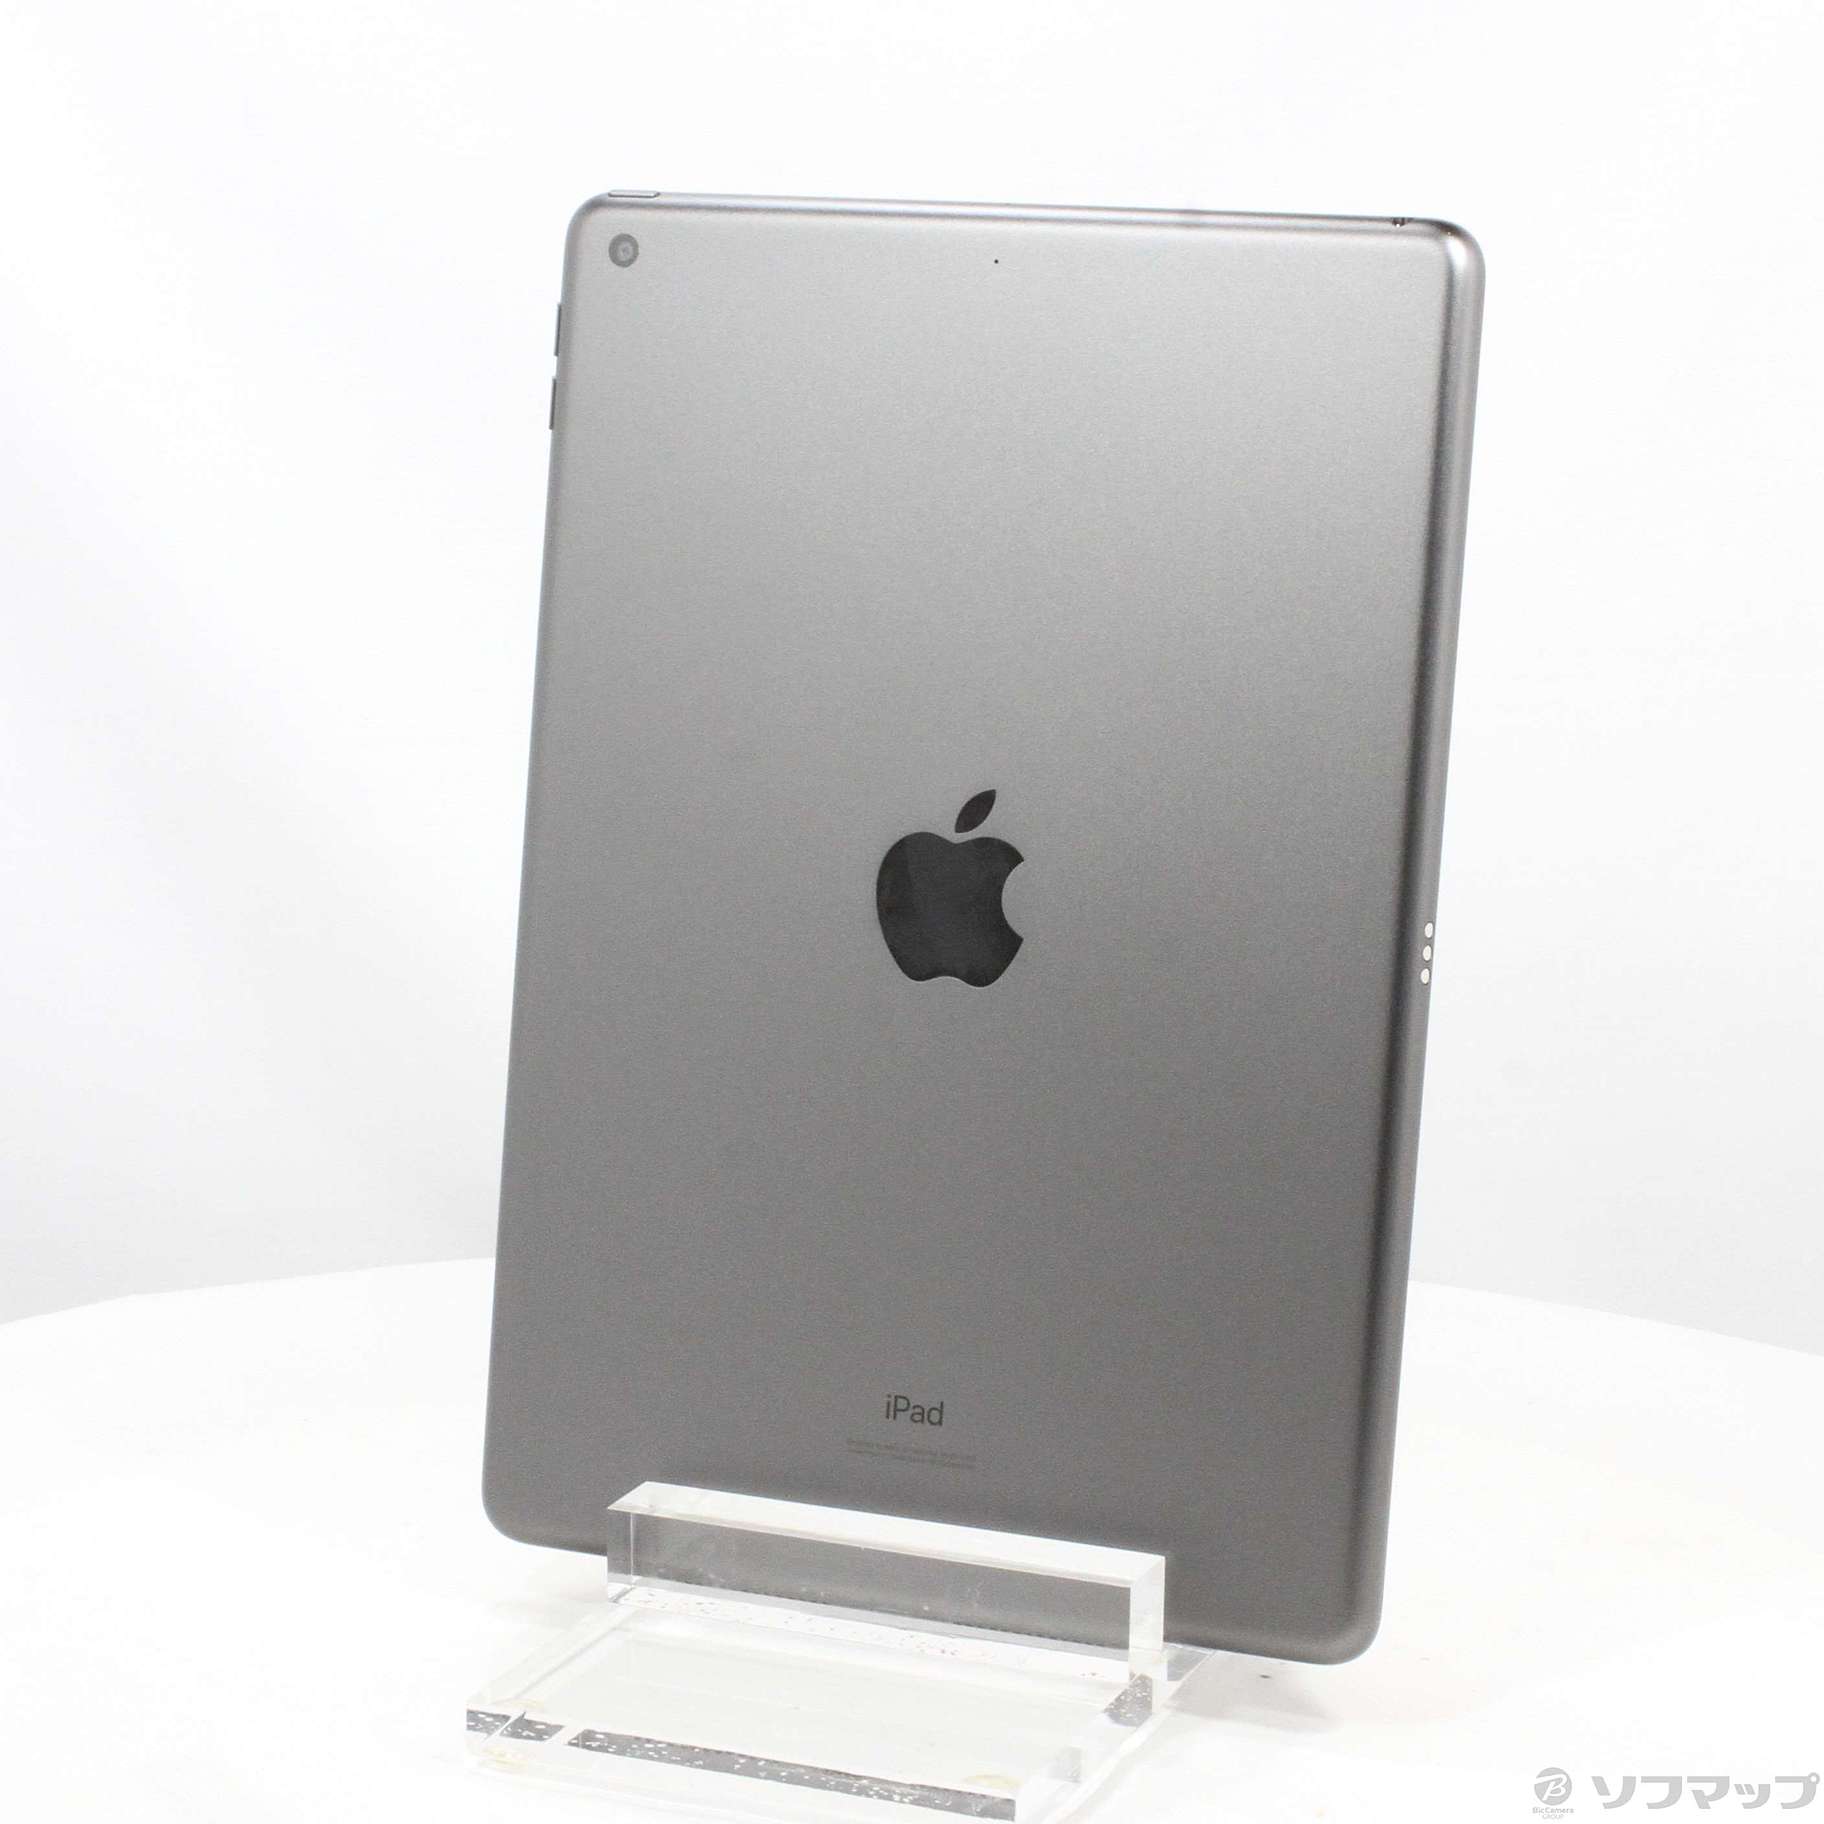 (中古)Apple iPad 第7世代 32GB スペースグレイ MW742LL/A Wi-Fi(344-ud)